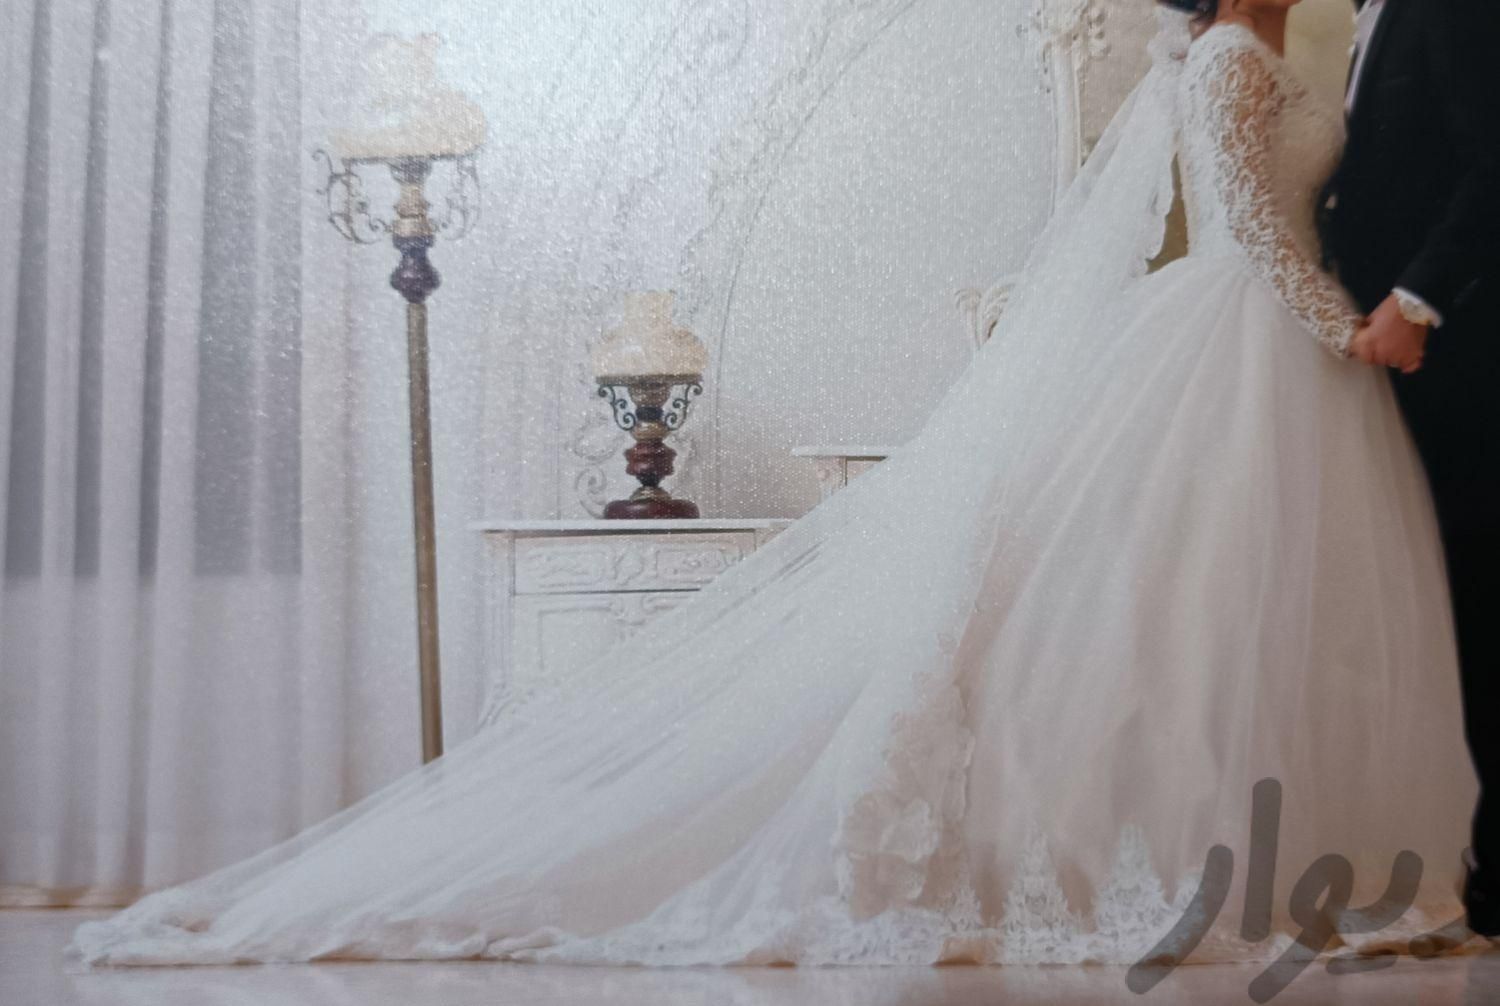 لباس عروس مزونی شیک|لباس|تهران, منصوریه (پل سیمان)|دیوار